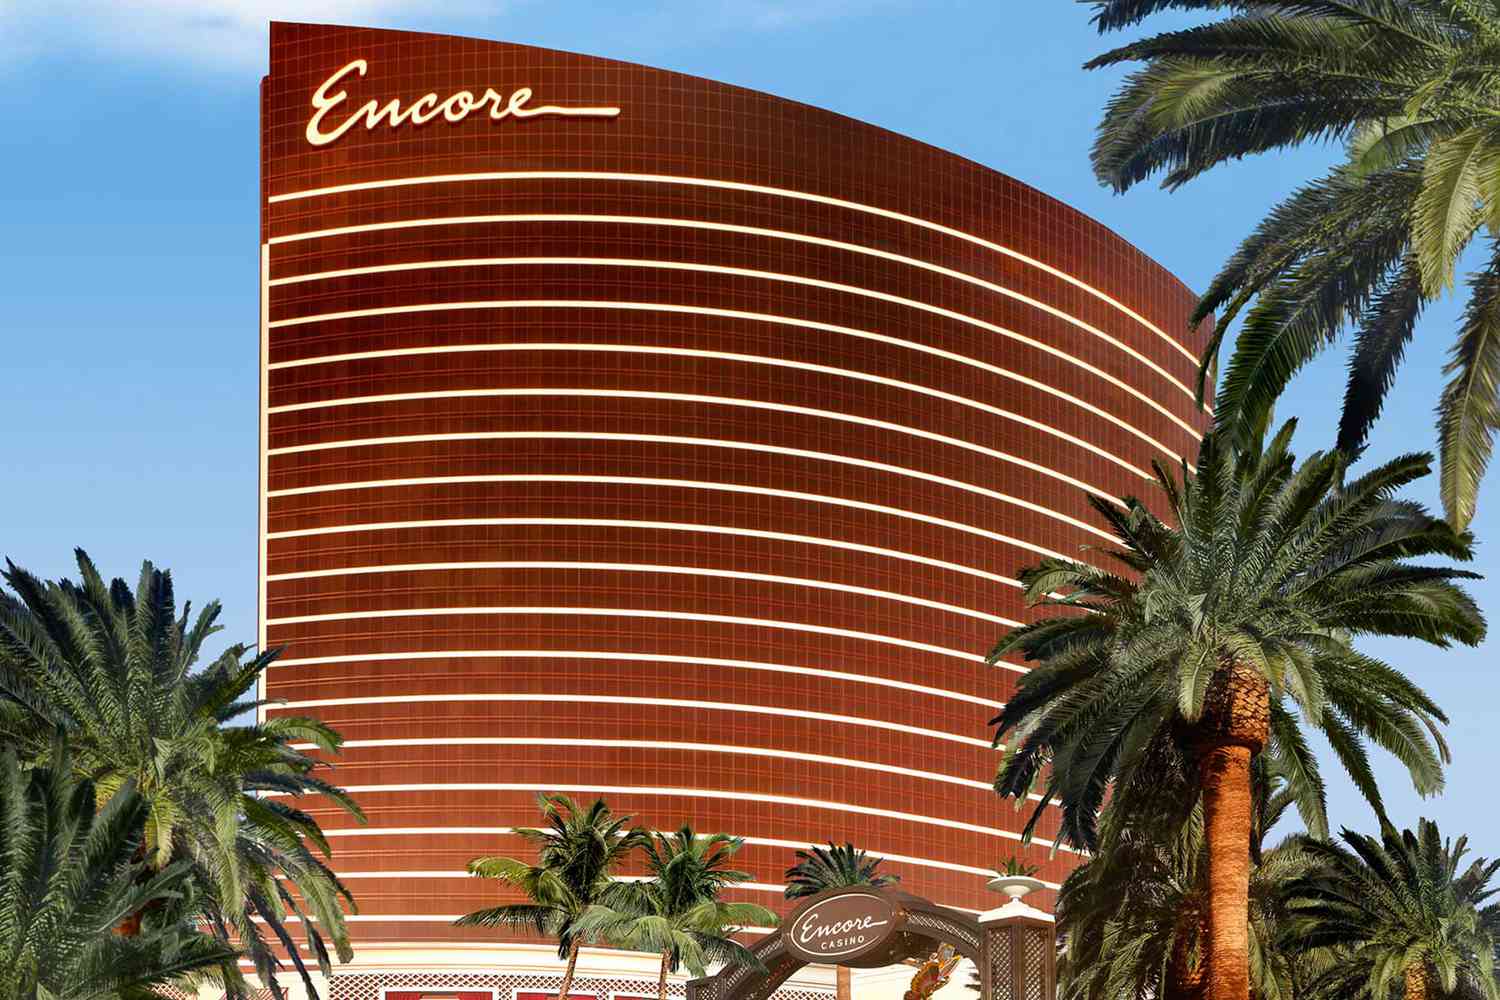 Encore Las Vegas, Nevada